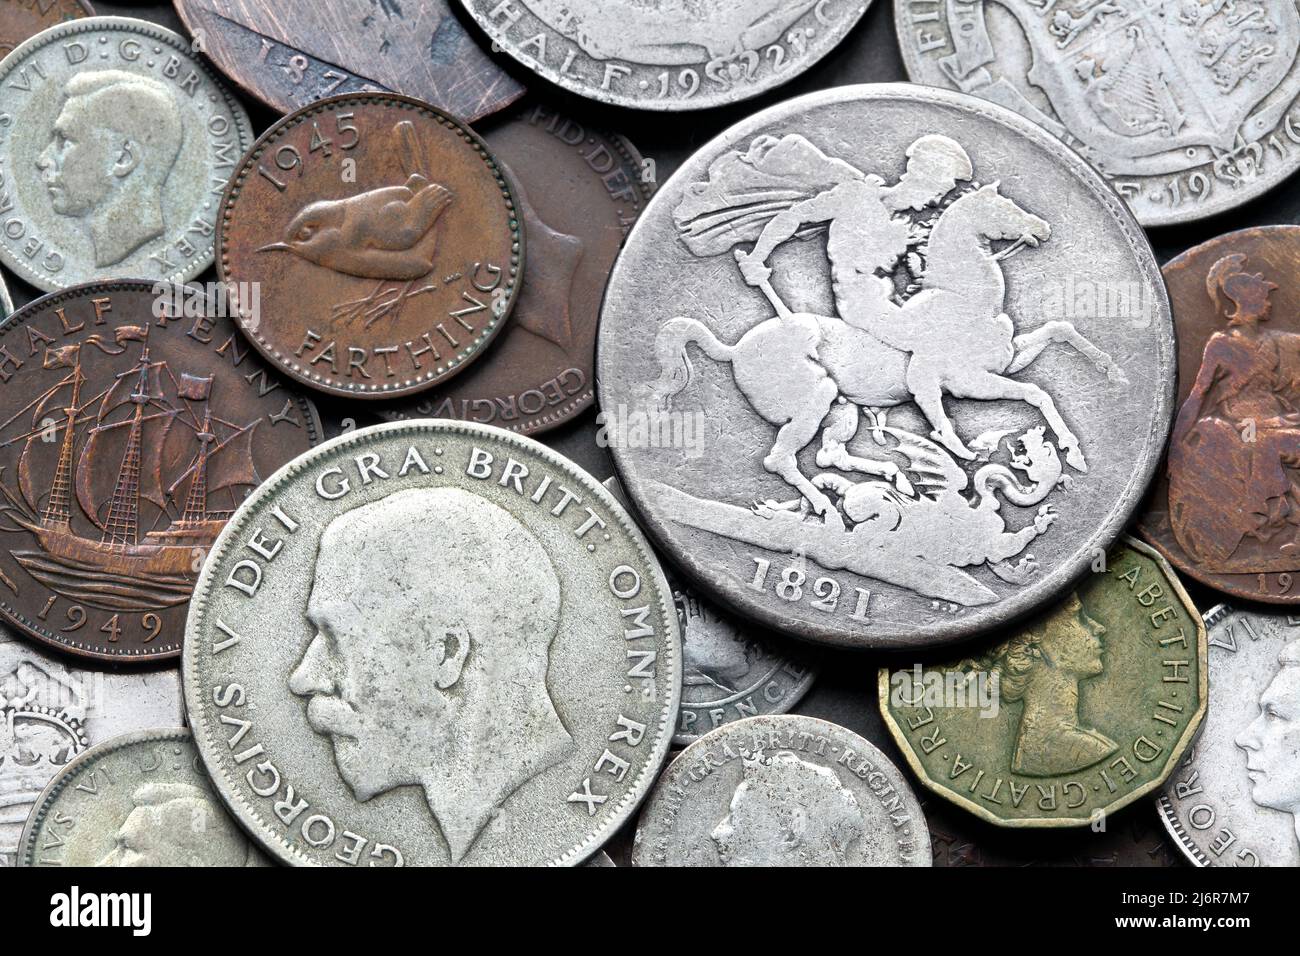 Eine Auswahl alter britischer Münzen aus dem 19. Und 20. Jahrhundert, darunter eine silberne Krone aus dem Jahr 1821 aus der Regierungszeit von George IV Stockfoto